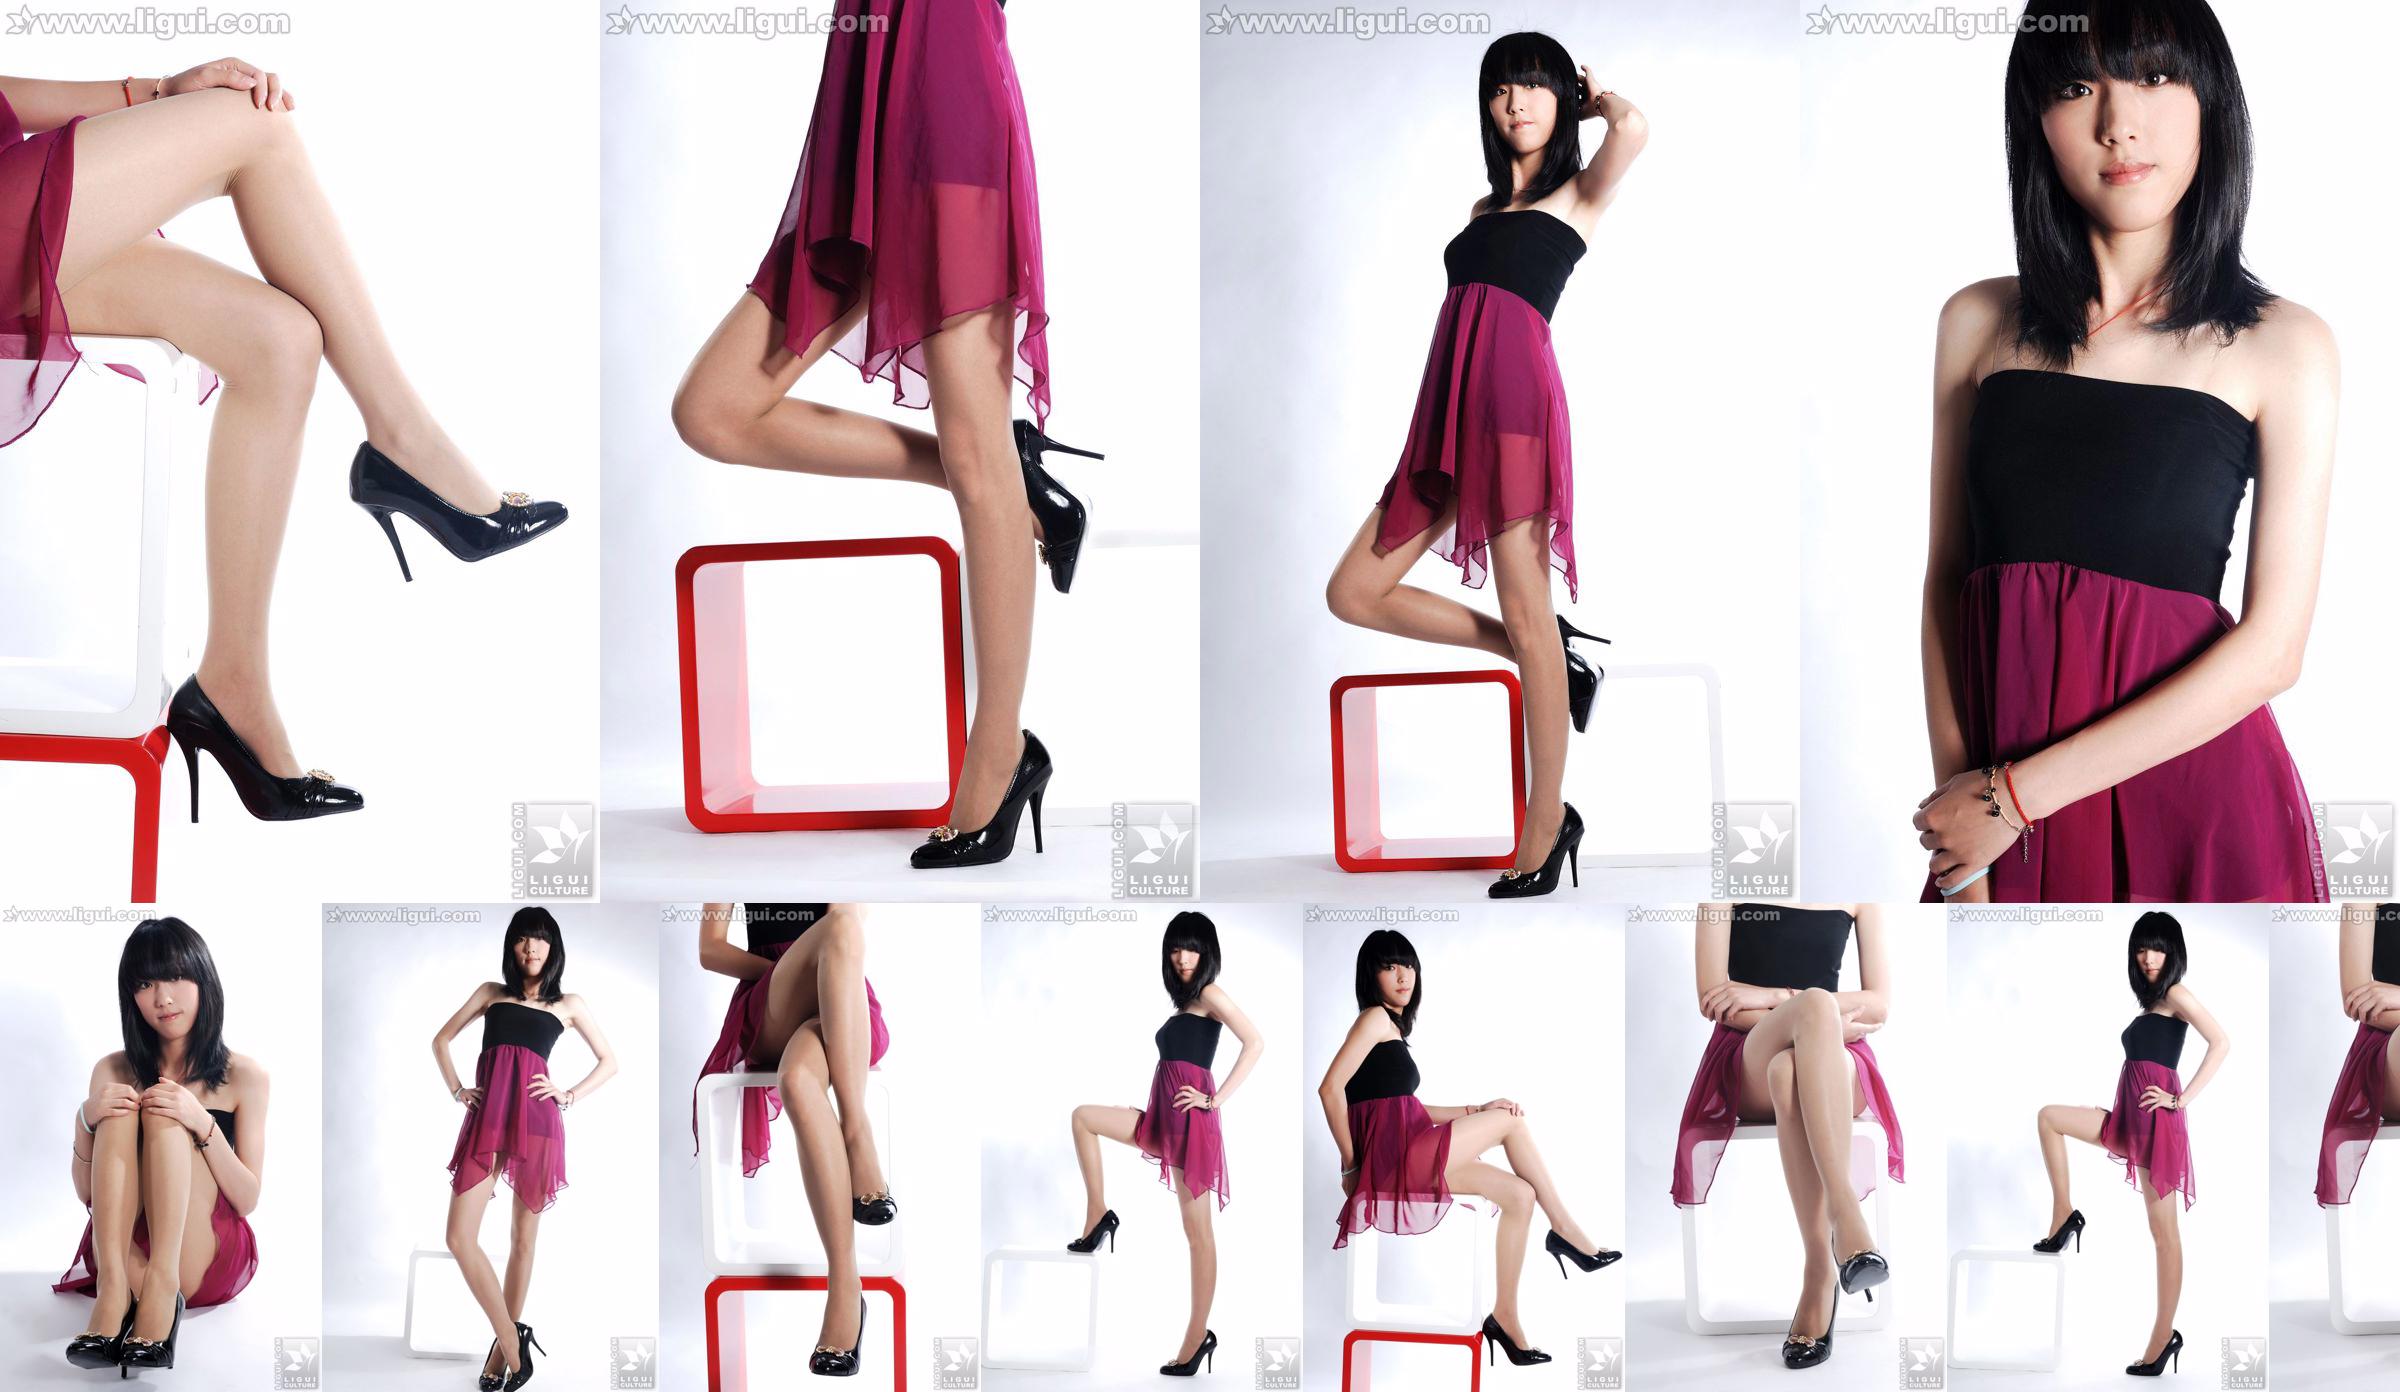 นางแบบ Lu Yingmei "Top Visual High-heeled Blockbuster" [丽柜 LiGui] ภาพถ่ายขาสวยและเท้าหยก No.4cb763 หน้า 1